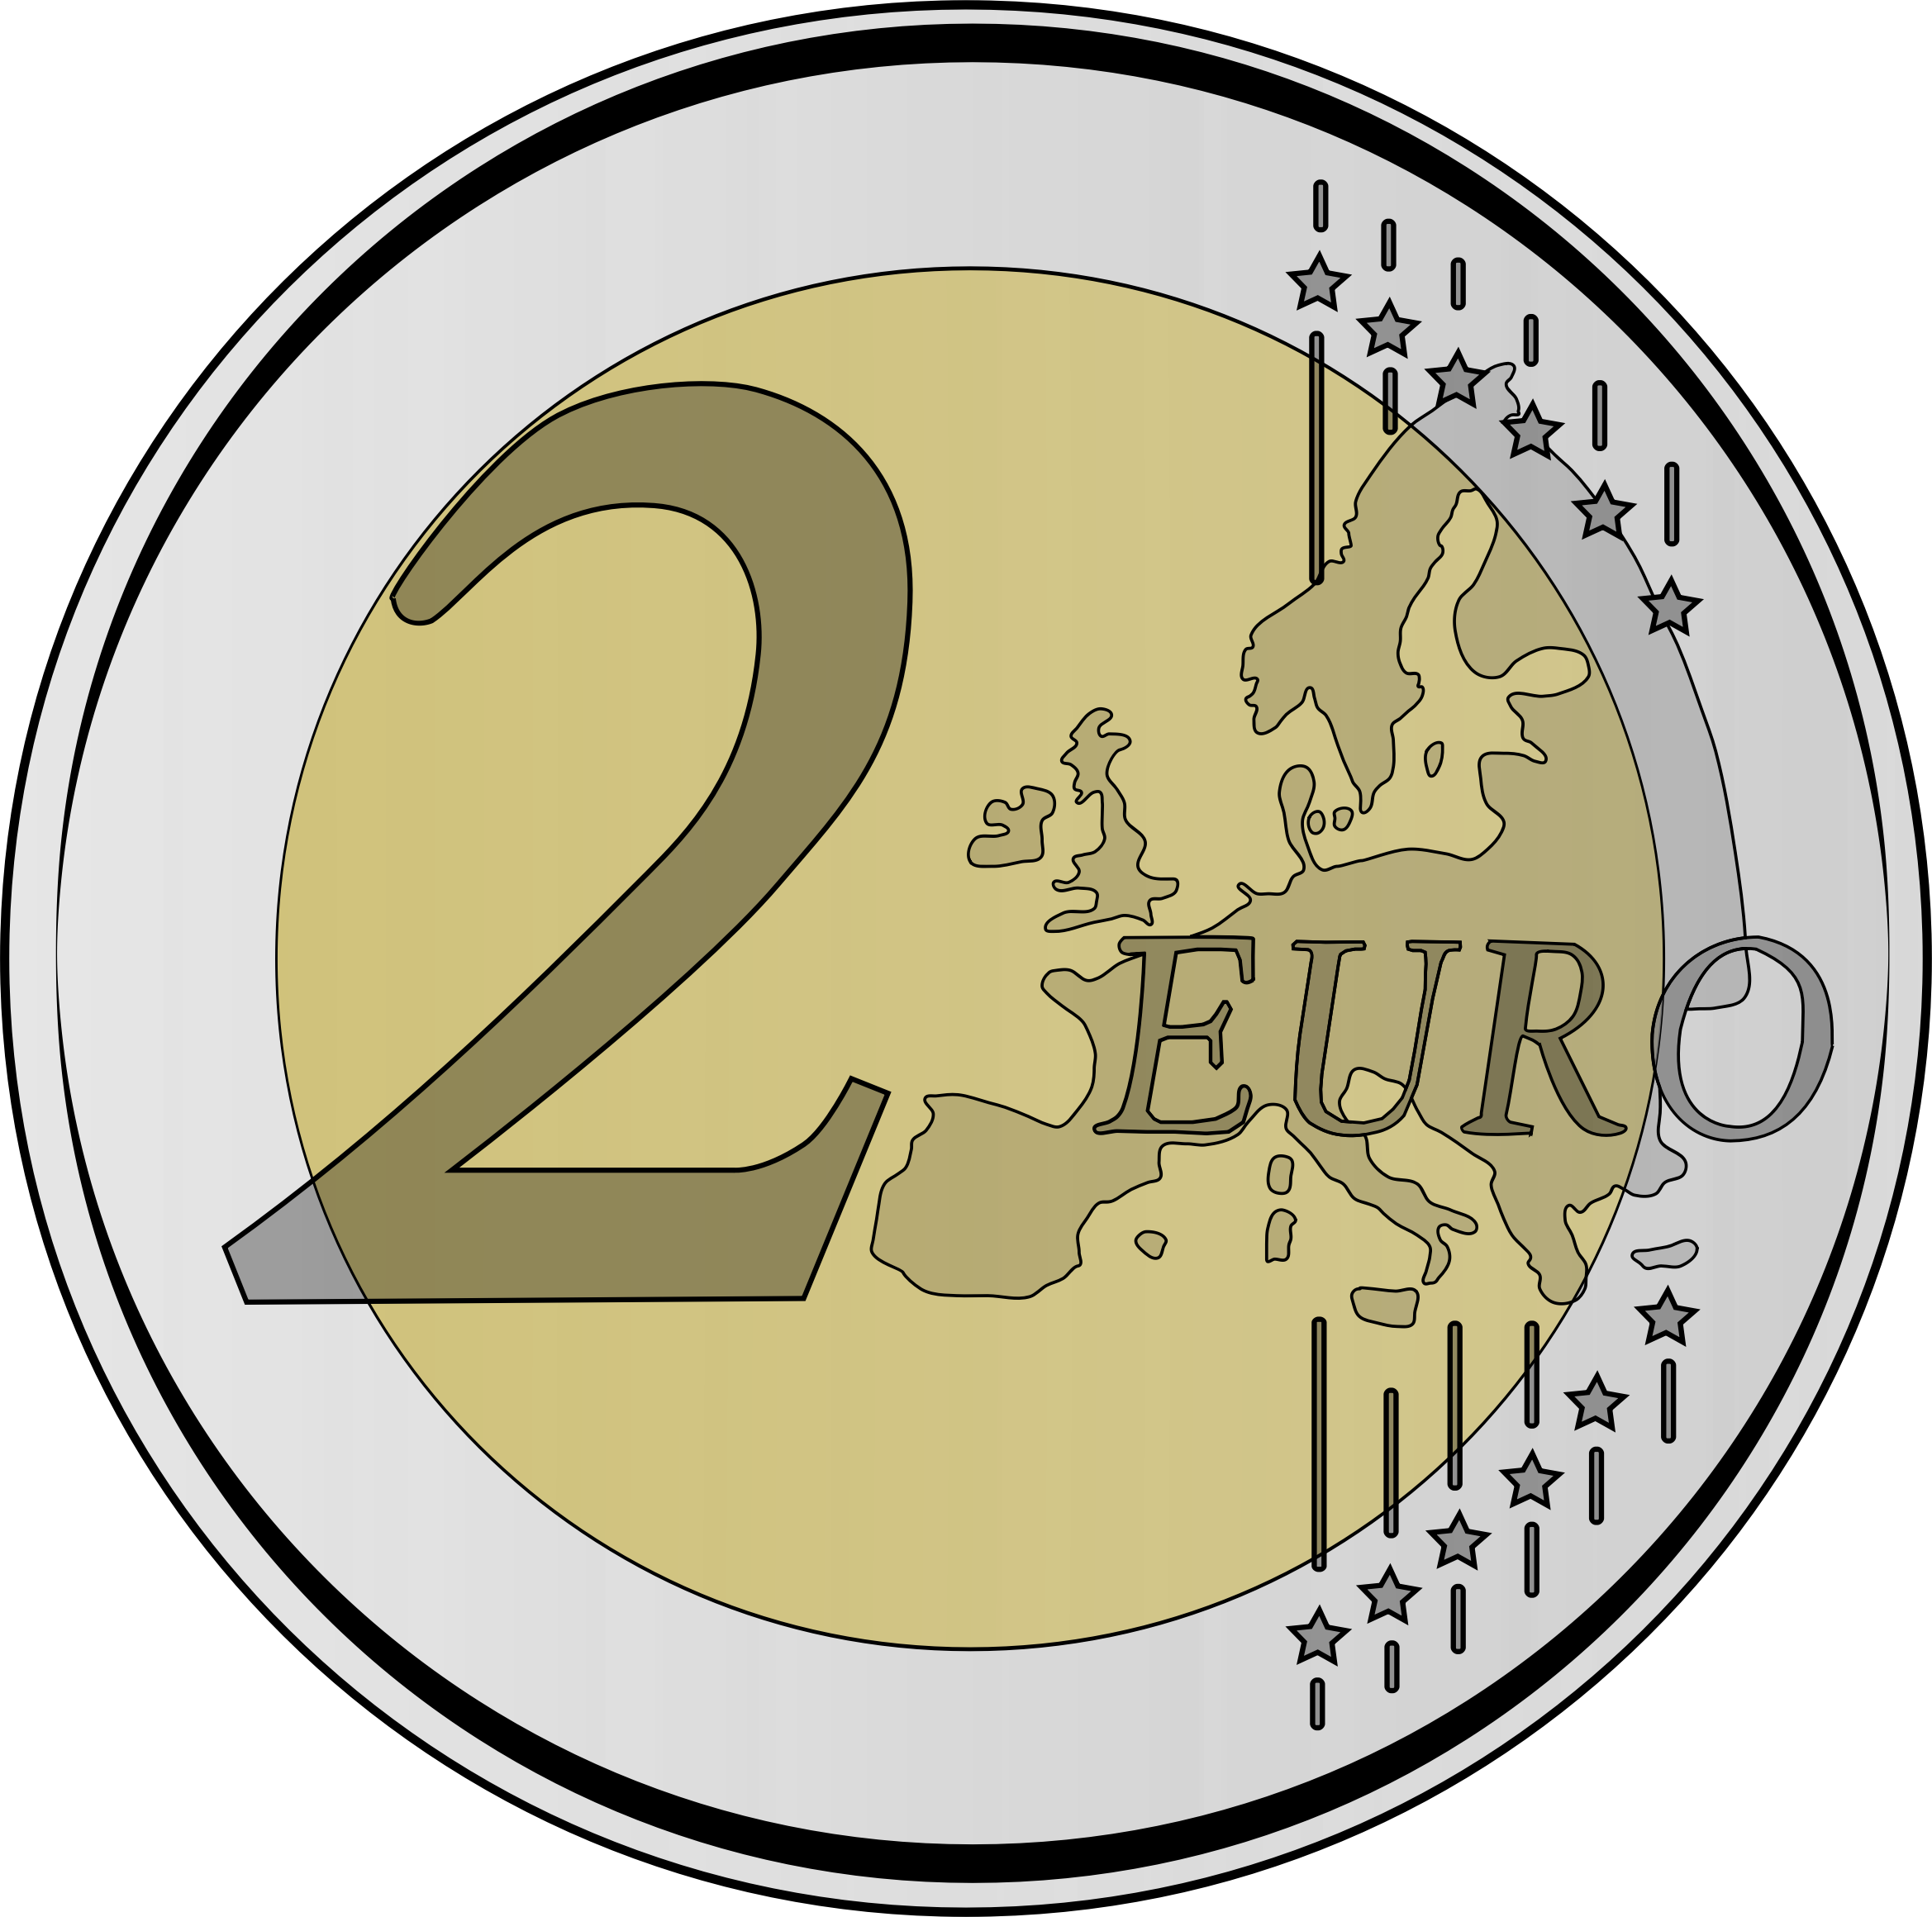 euro coins clipart - photo #3